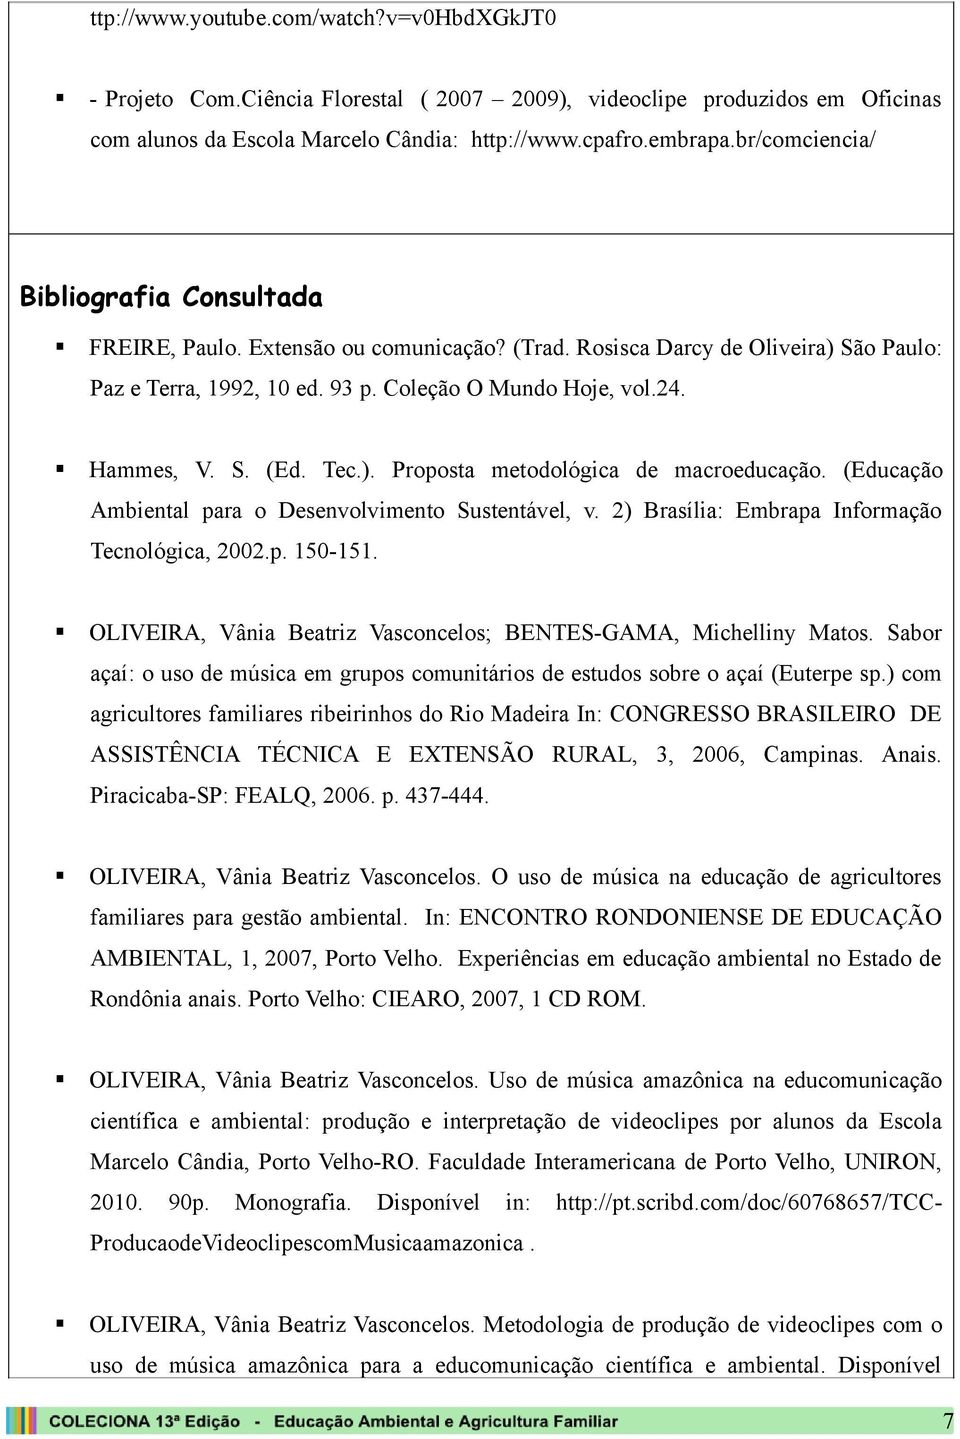 Tec.). Proposta metodológica de macroeducação. (Educação Ambiental para o Desenvolvimento Sustentável, v. 2) Brasília: Embrapa Informação Tecnológica, 2002.p. 150-151.